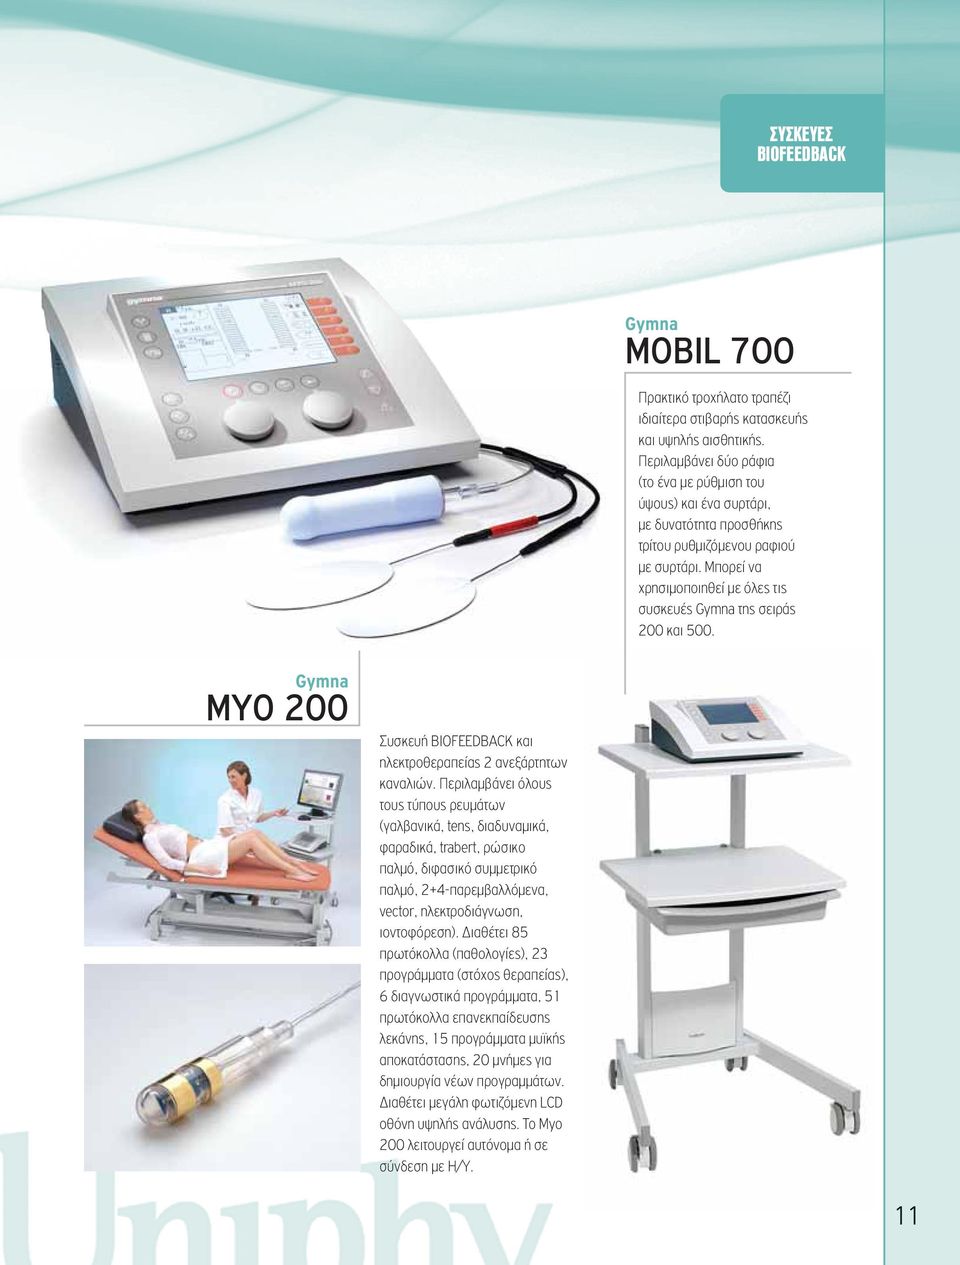 Μπορεί να χρησιμοποιηθεί με όλες τις συσκευές της σειράς 200 και 500. MYO 200 Συσκευή BIOFEEDBACK και ηλεκτροθεραπείας 2 ανεξάρτητων καναλιών.